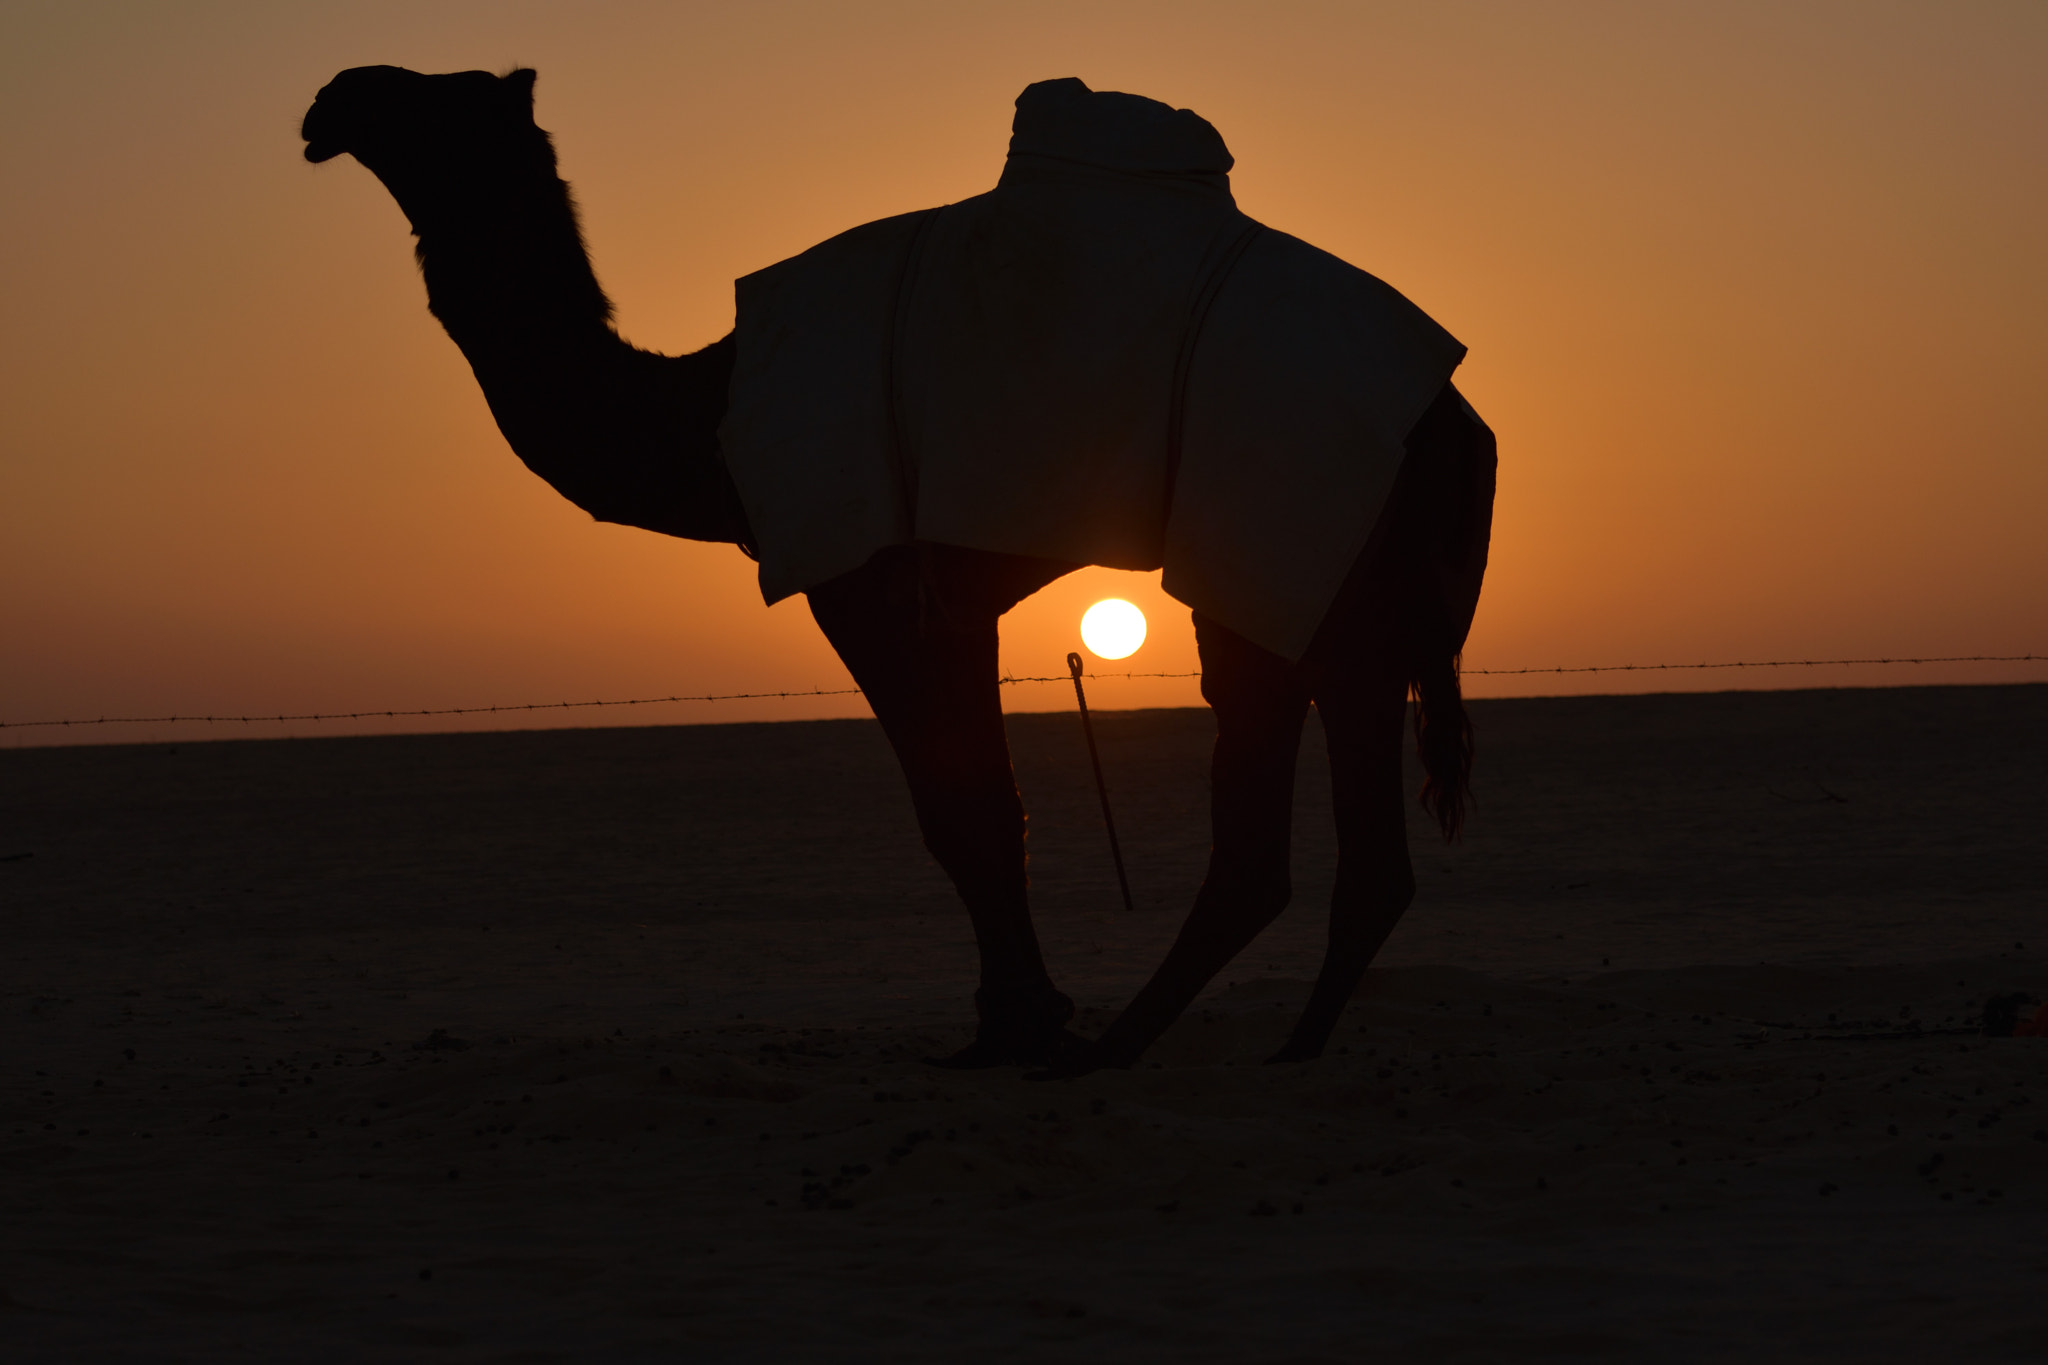 Nikon D3400 + Nikon AF-S Nikkor 70-300mm F4.5-5.6G VR sample photo. Shadow of camel's sunset photography